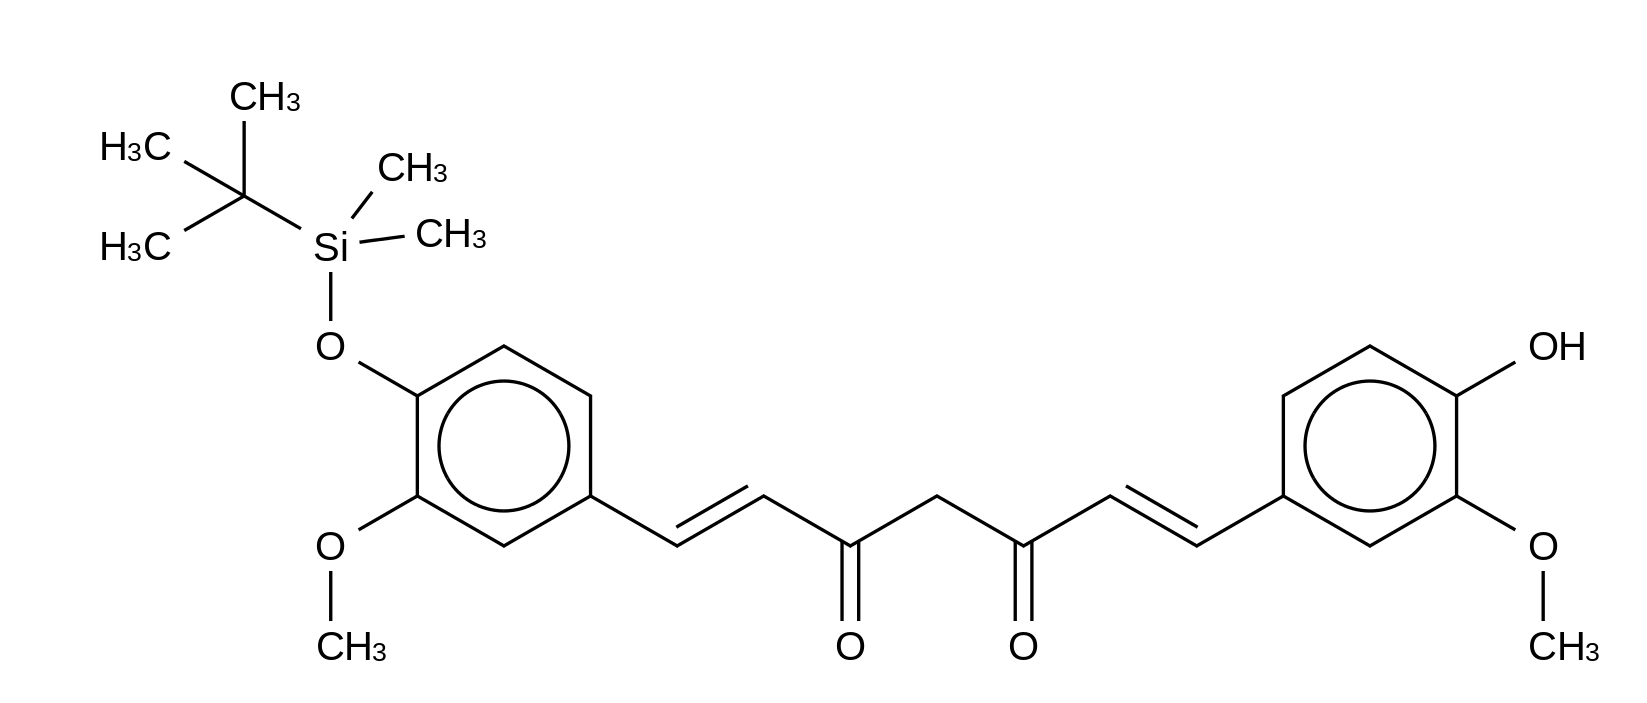 O-tert-Butyl-dimethylsilyl Curcumin